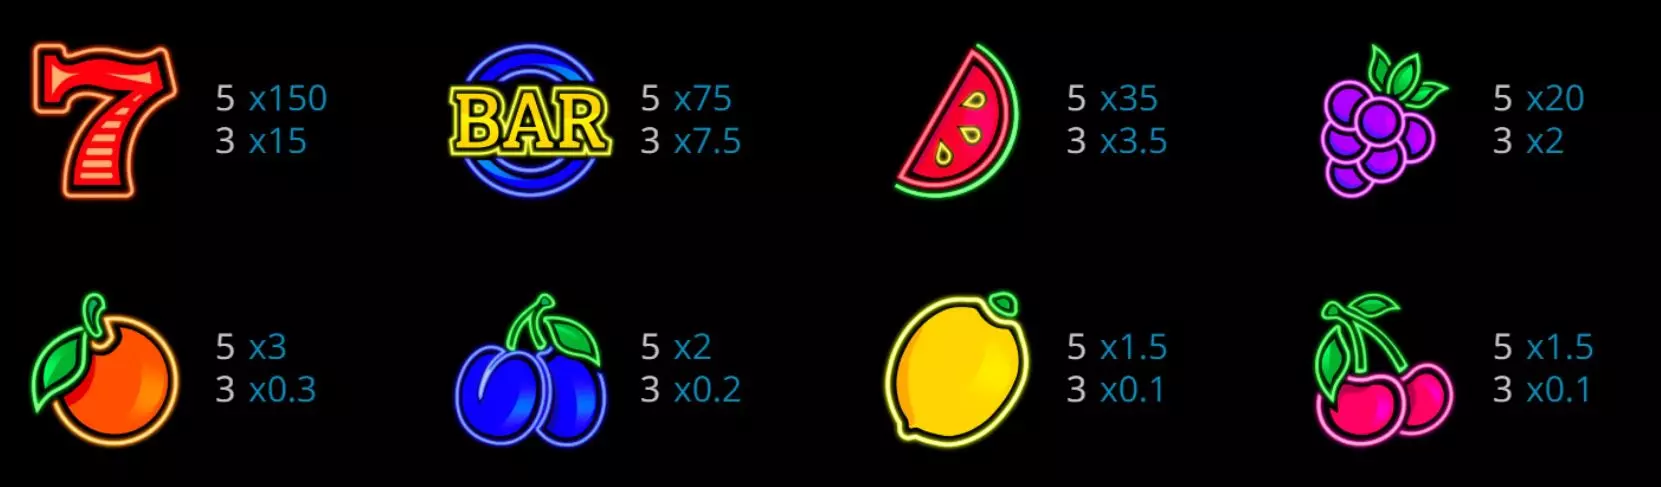 DB電子爆炸水果玩法規則說明